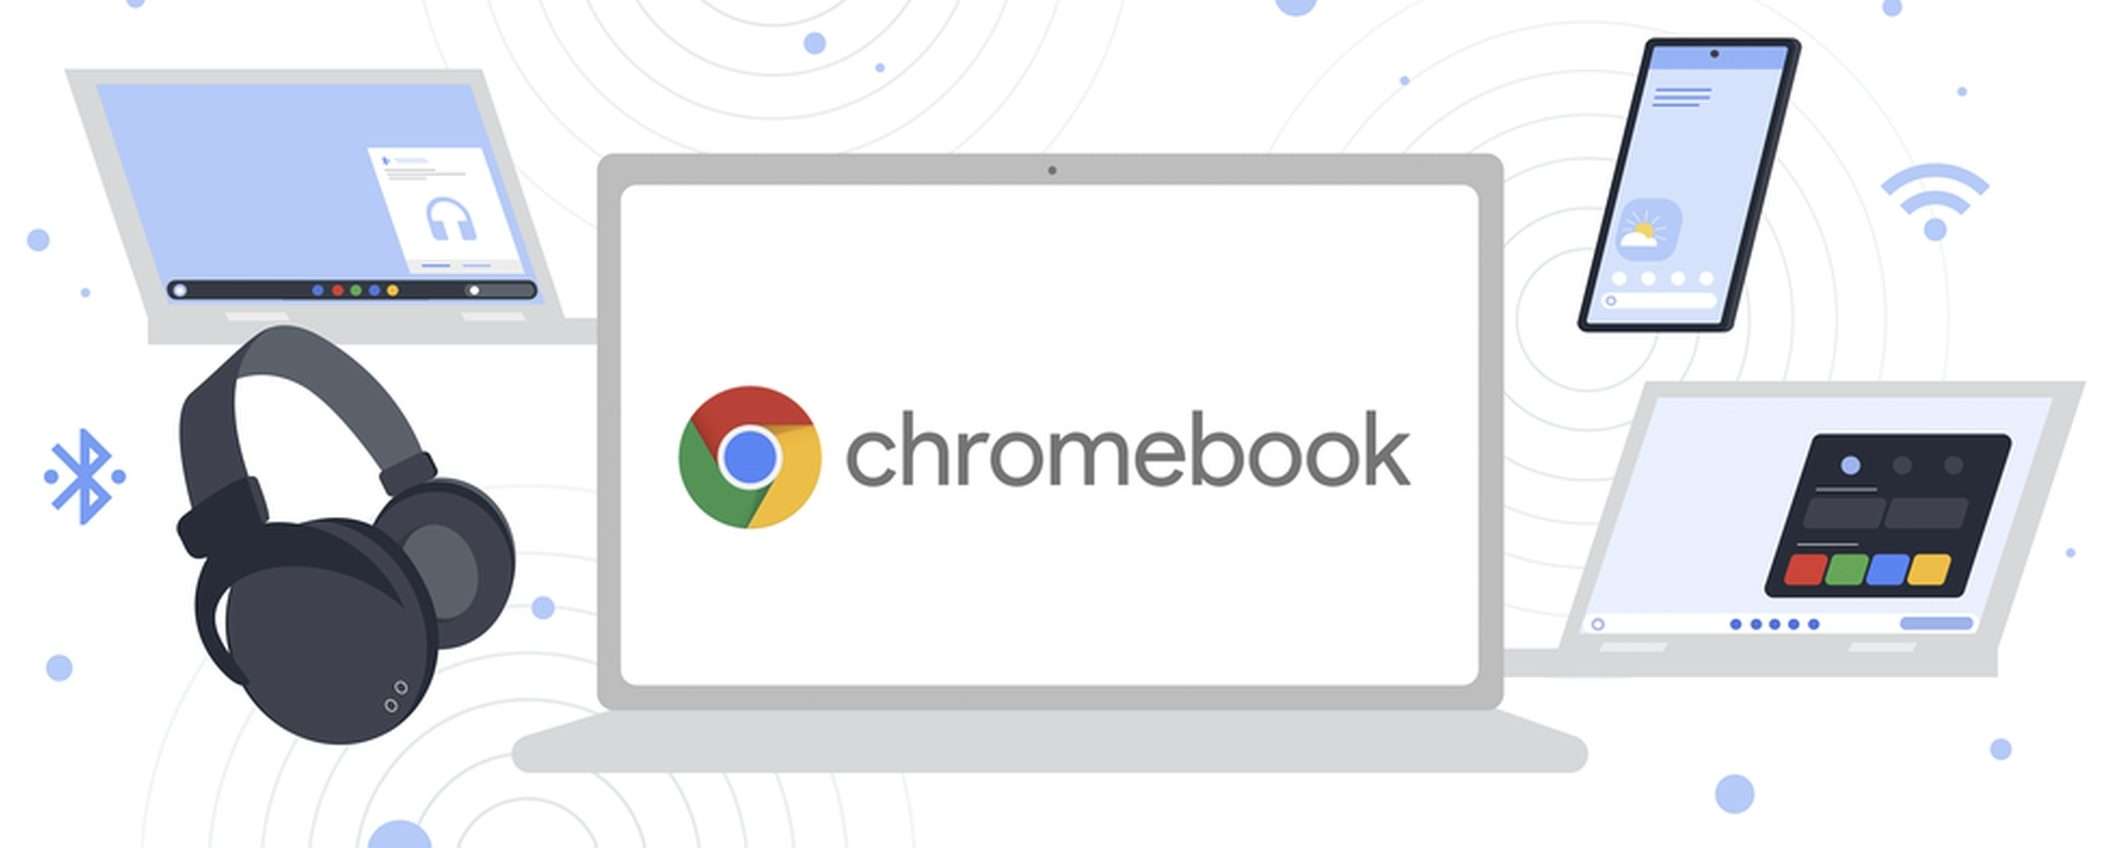 Migliora la sincronizzazione tra Chrome OS e Android